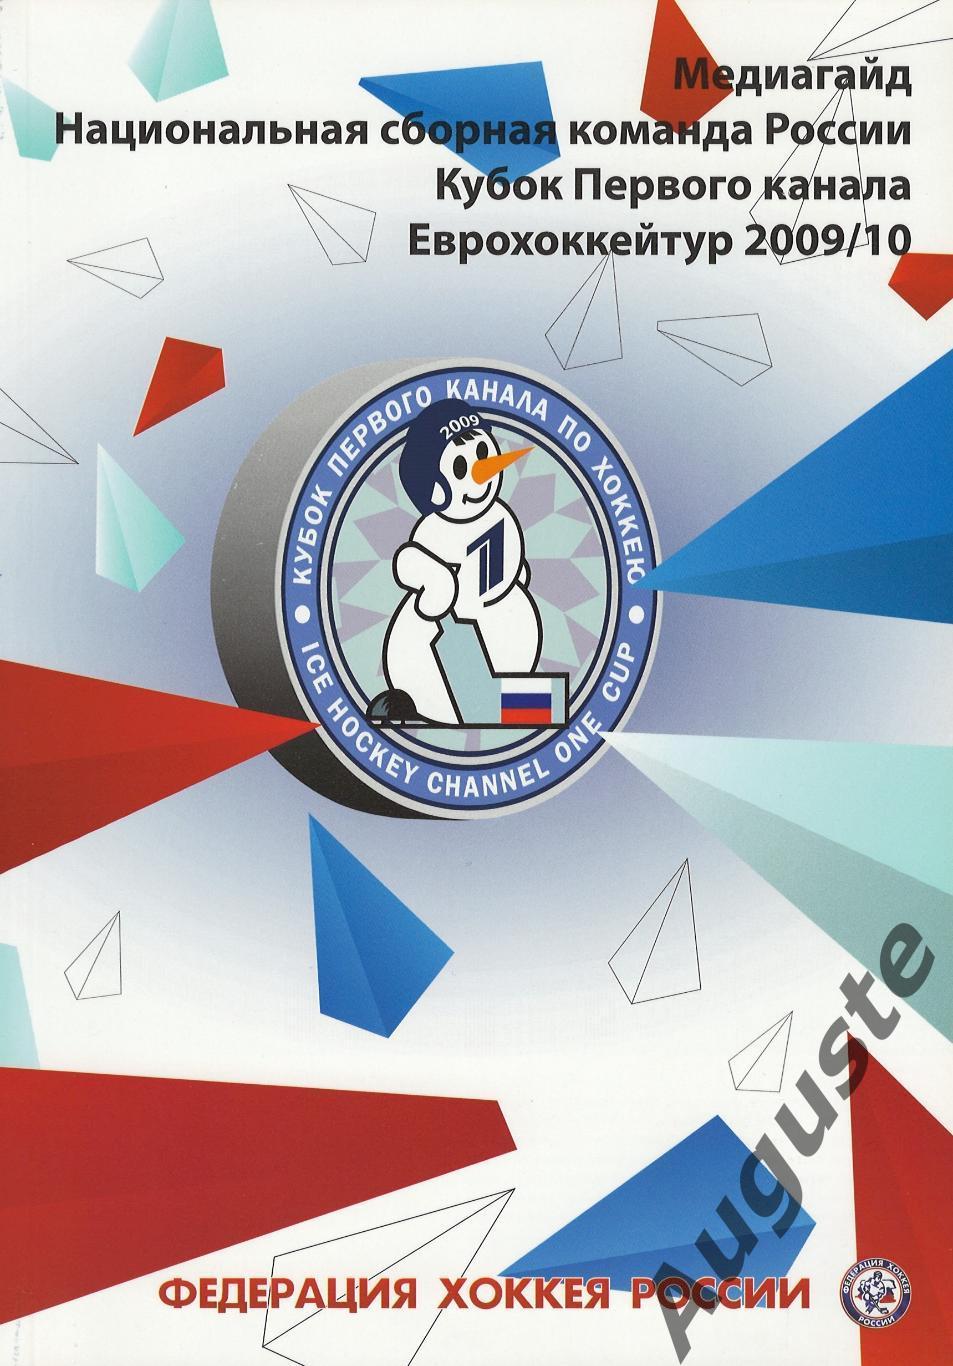 Медиа гайд. Сборная России. 2009/10 г. Media Guide. Team Russia. 2009/10.